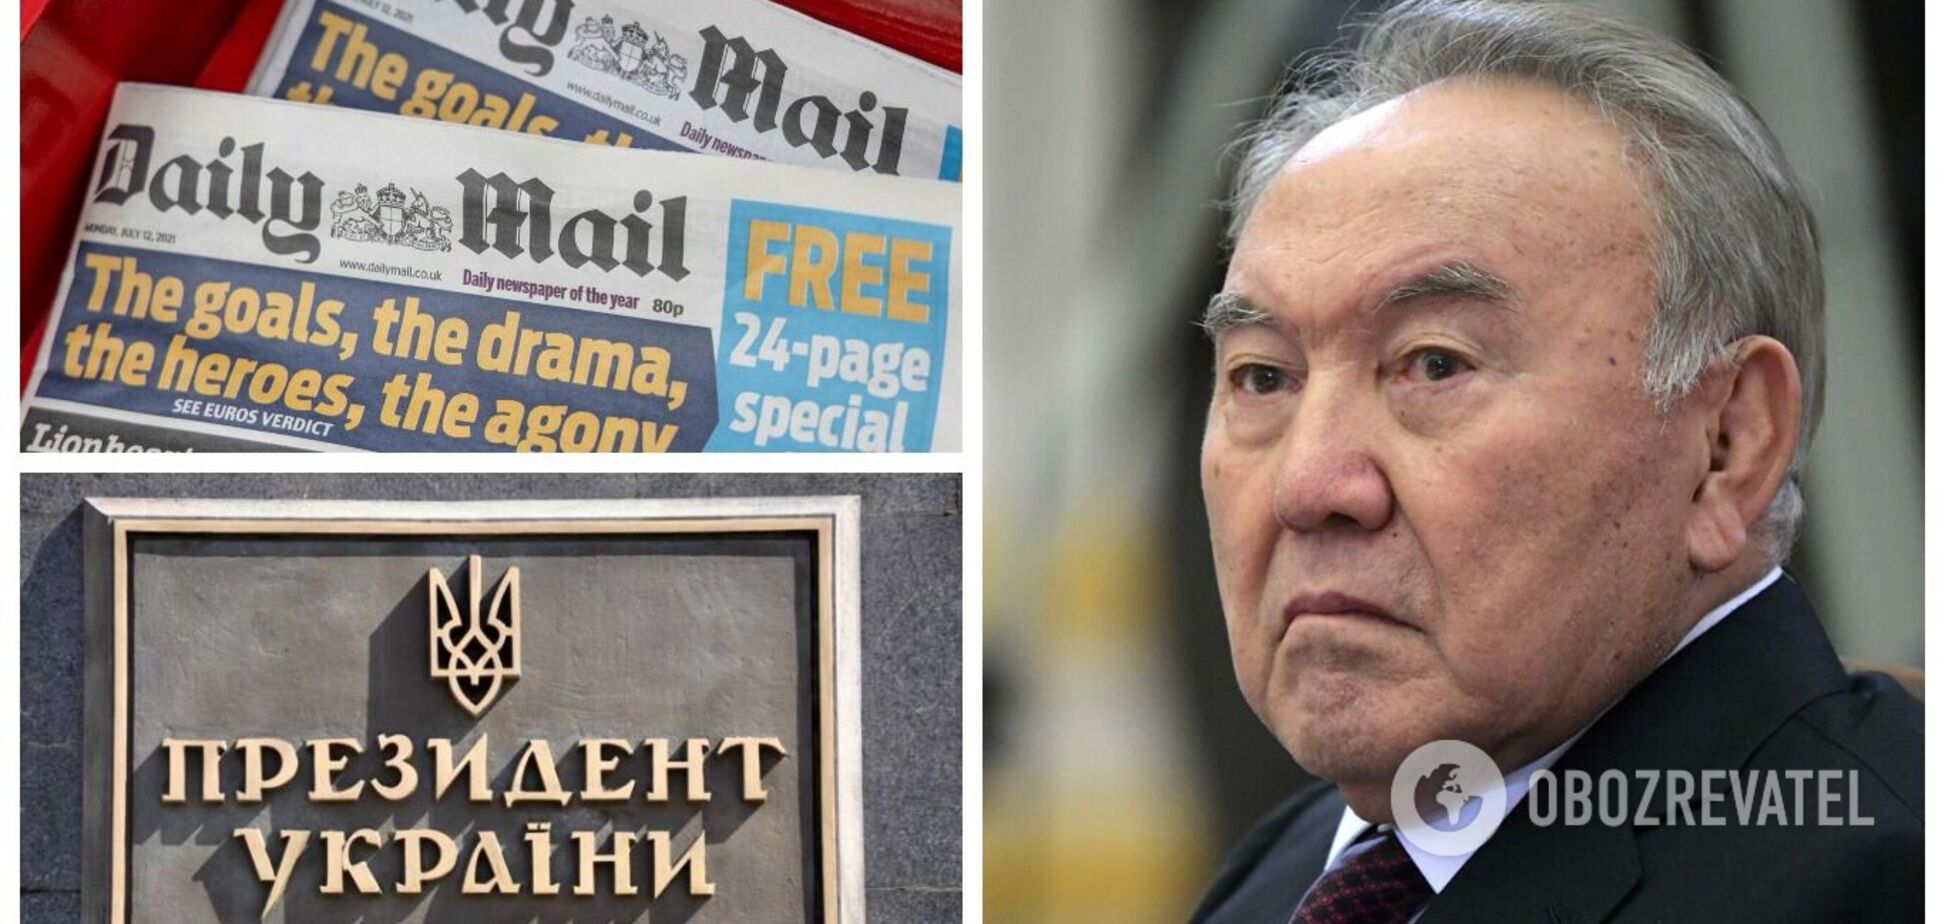 Британское СМИ назвало Назарбаева экс-президентом Украины